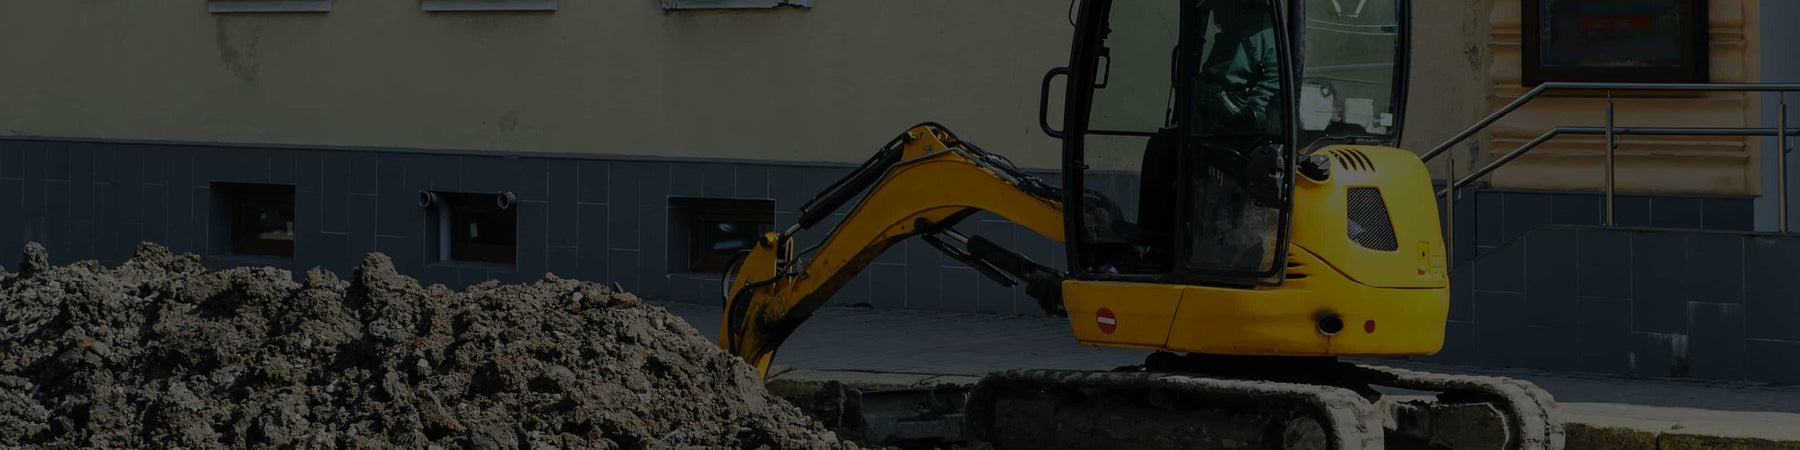 Attachments Turn Mini-excavators Into Multipurpose Machines